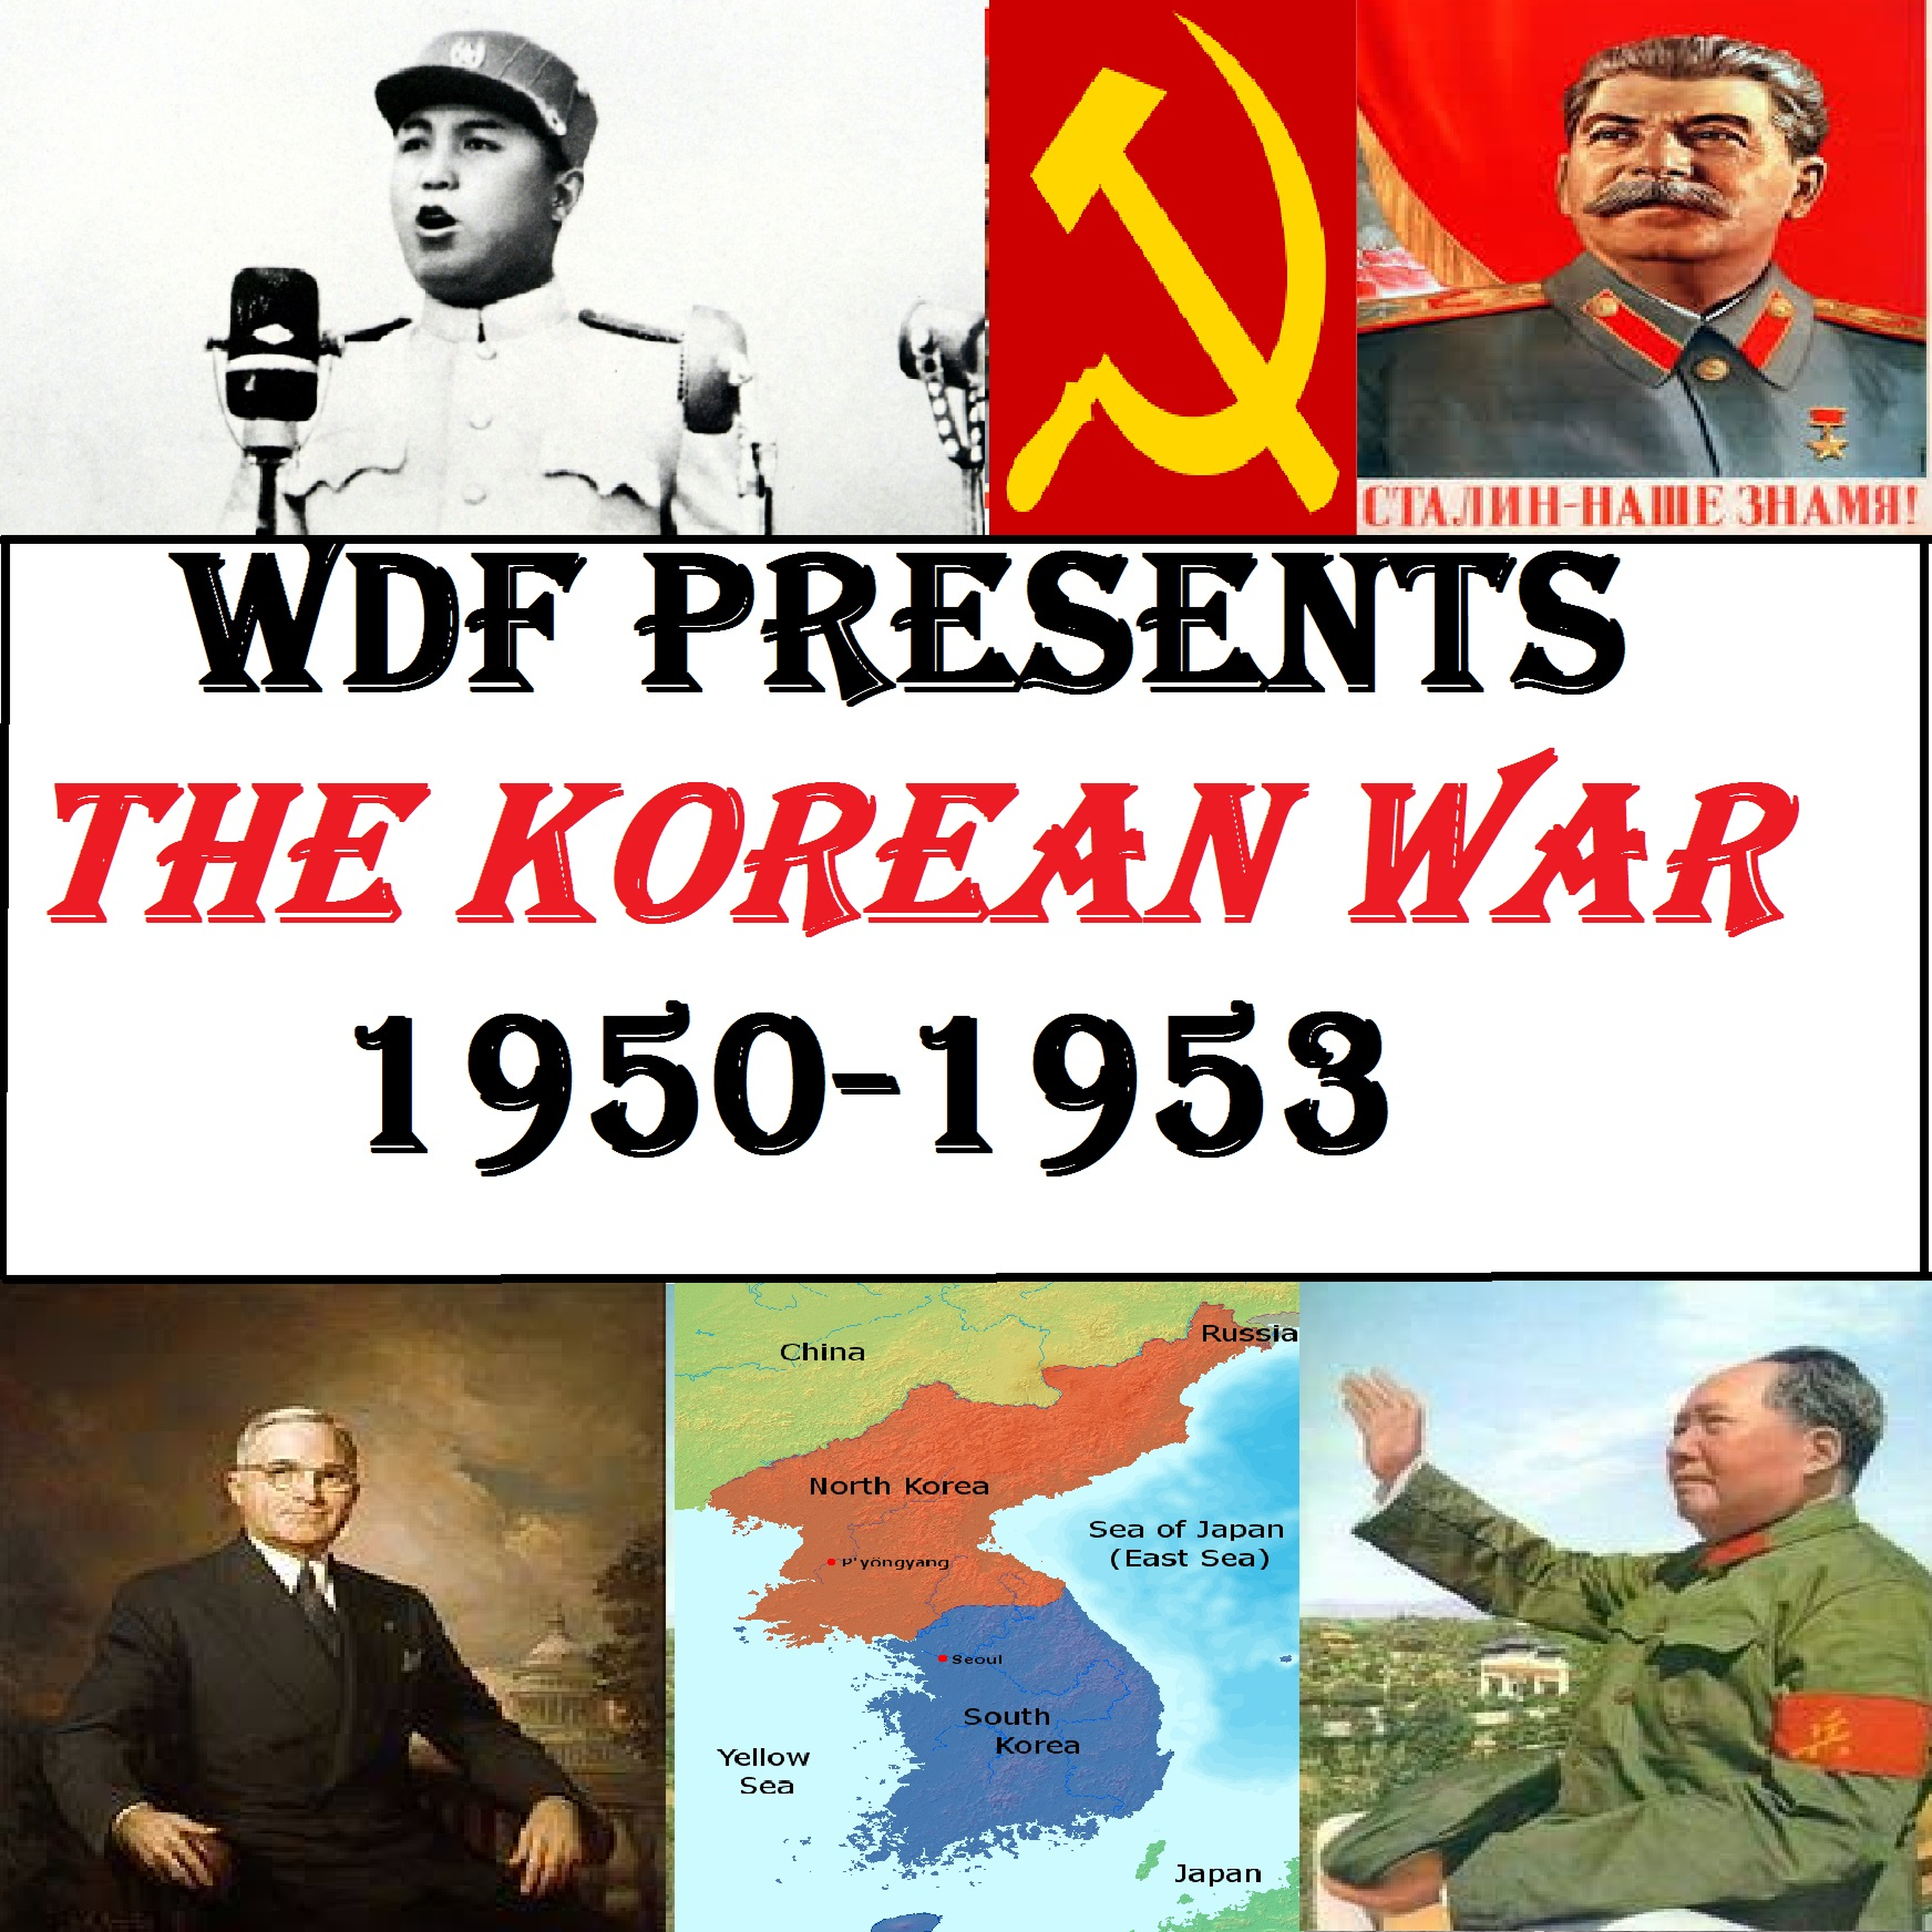 Korean War #30: Unfriendly Fire